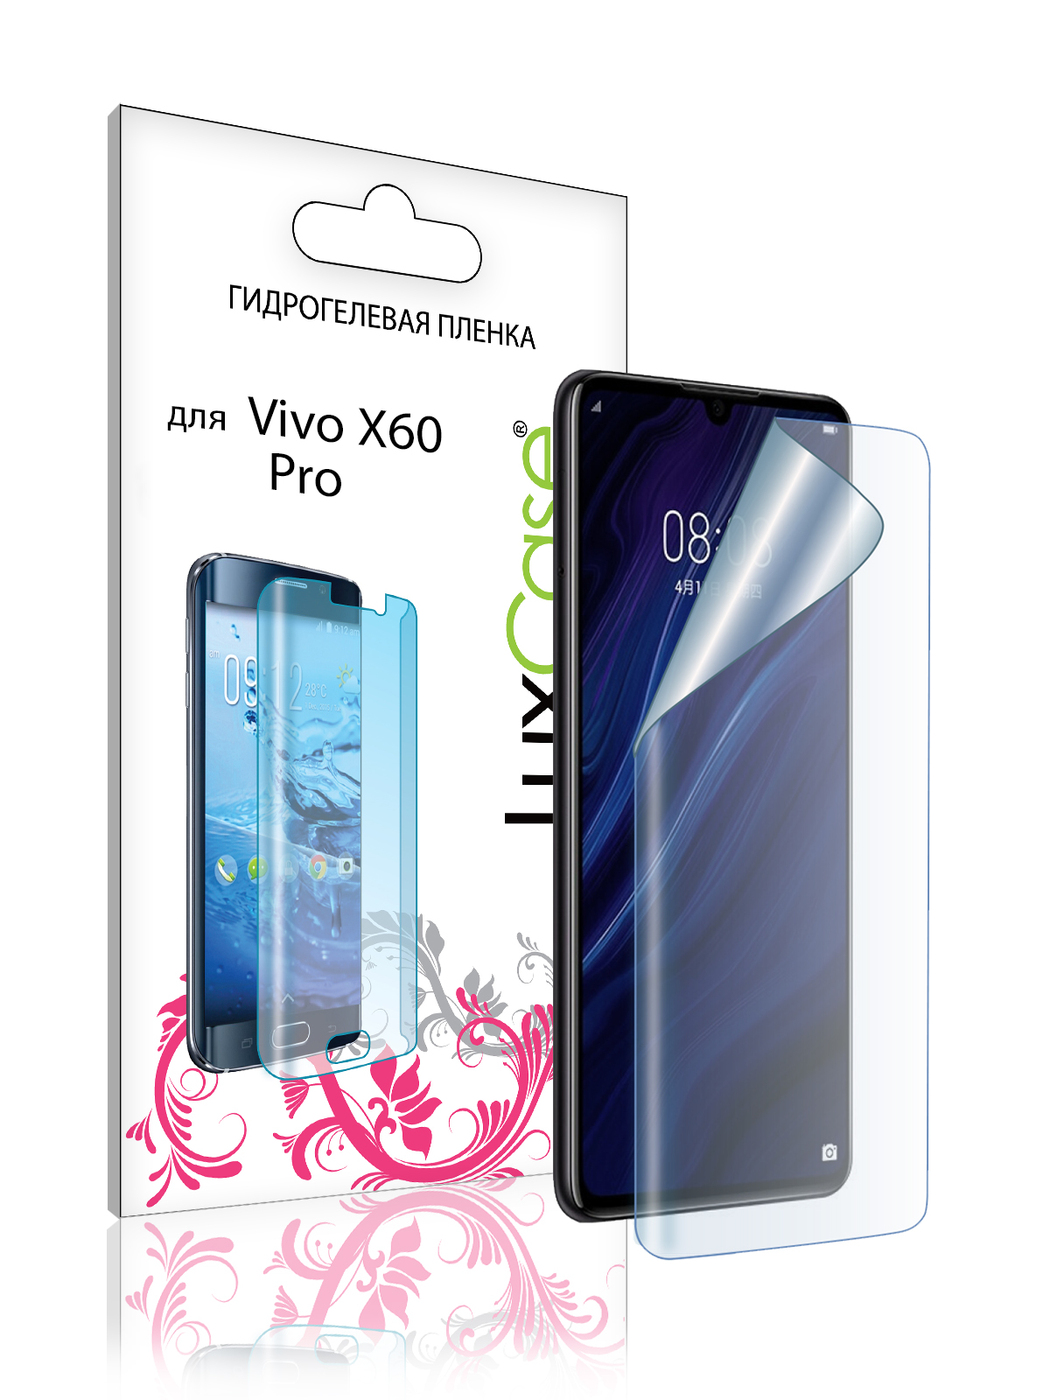 Пленка гидрогелевая LuxCase для Vivo X60 Pro Front 0.14mm Transparent 86001 гидрогелевая пленка с вырезом под камер задняя крышка и на дисплей для vivo x60 pro